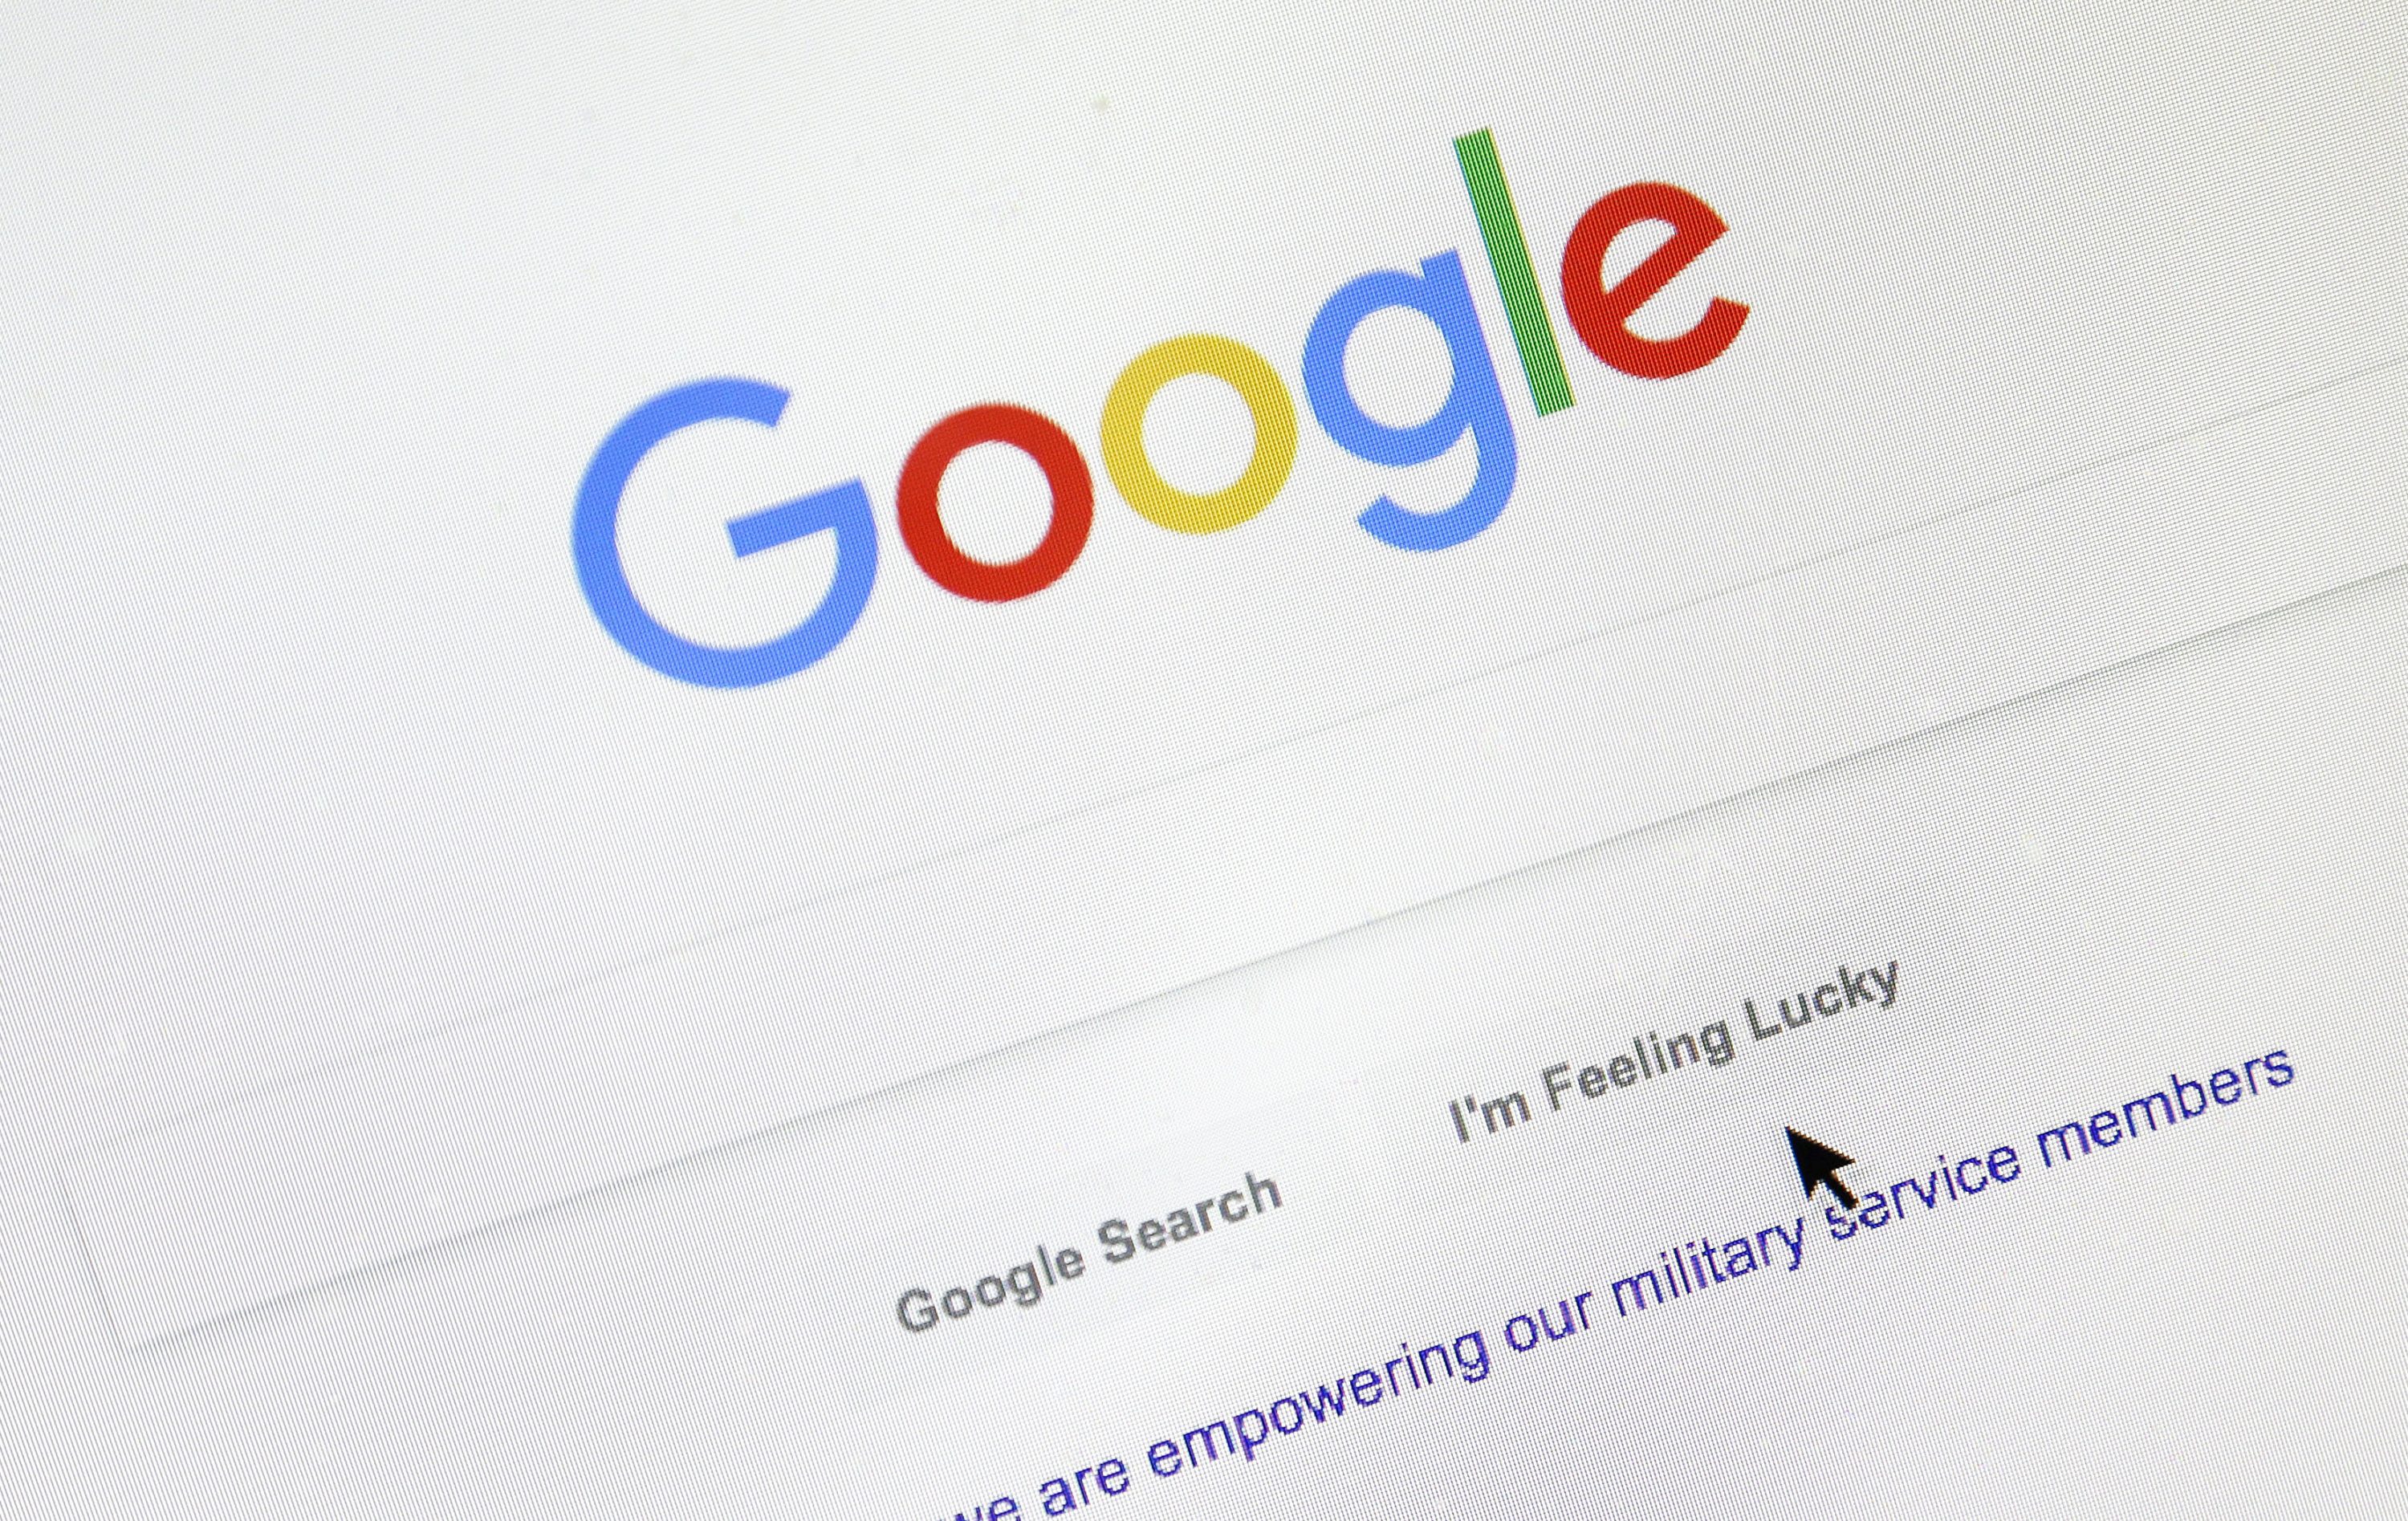 Aumenta el interés por las visitas virtuales, dice Google